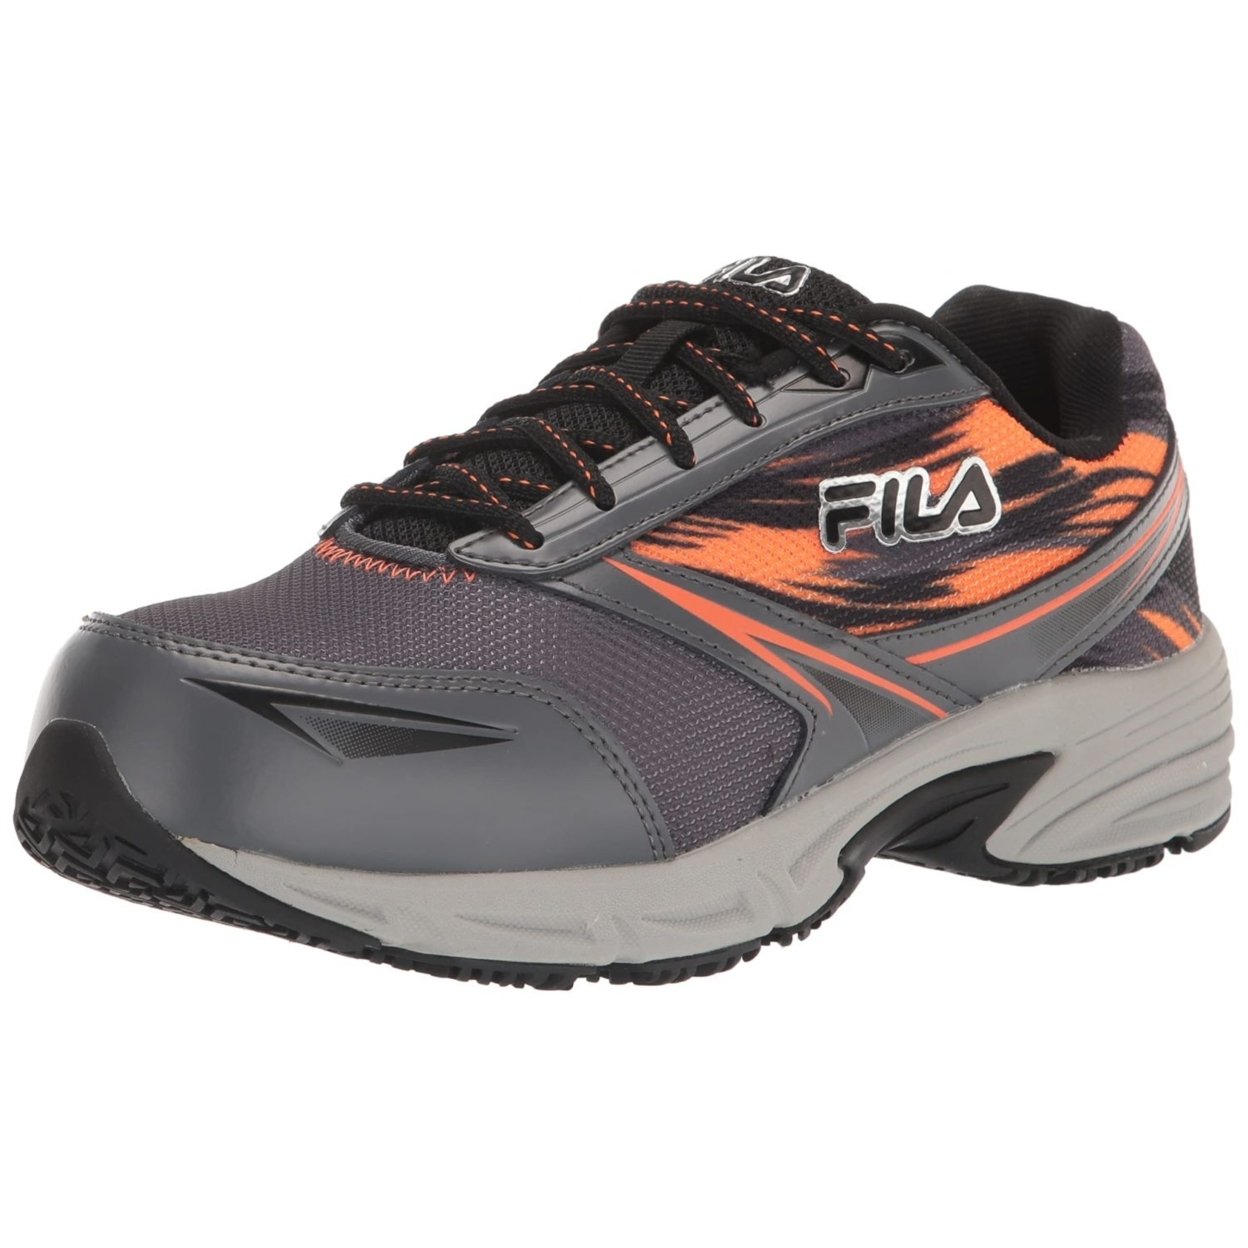 Fila Menâs Memory Meiera 2 Slip Resistant And Composite Toe Work Shoe CSRK/BLK/VORN - Castlerock/Black/Vibrant Orange, 12